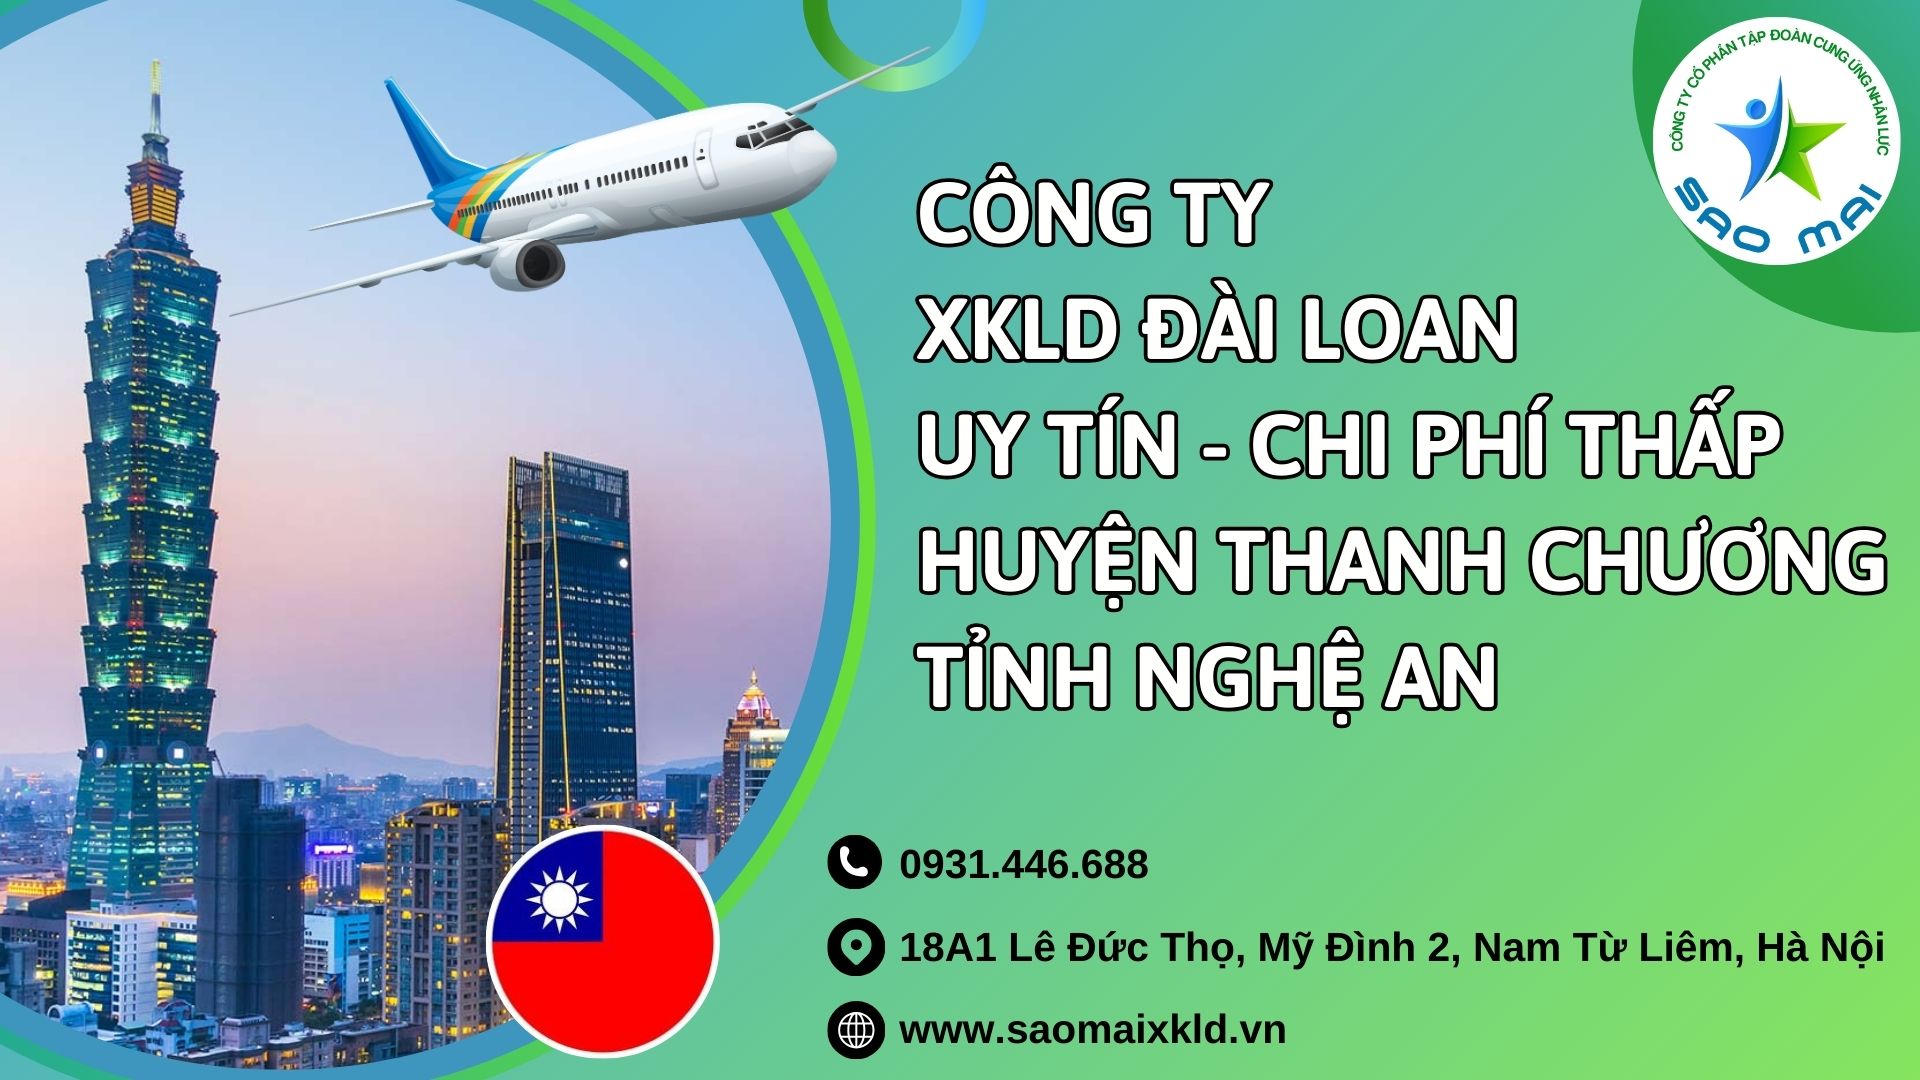 Công ty xuất khẩu lao động ĐÀI LOAN uy tín với chi phí thấp và bay nhanh tại huyện THANH CHƯƠNG, tỉnh NGHỆ AN